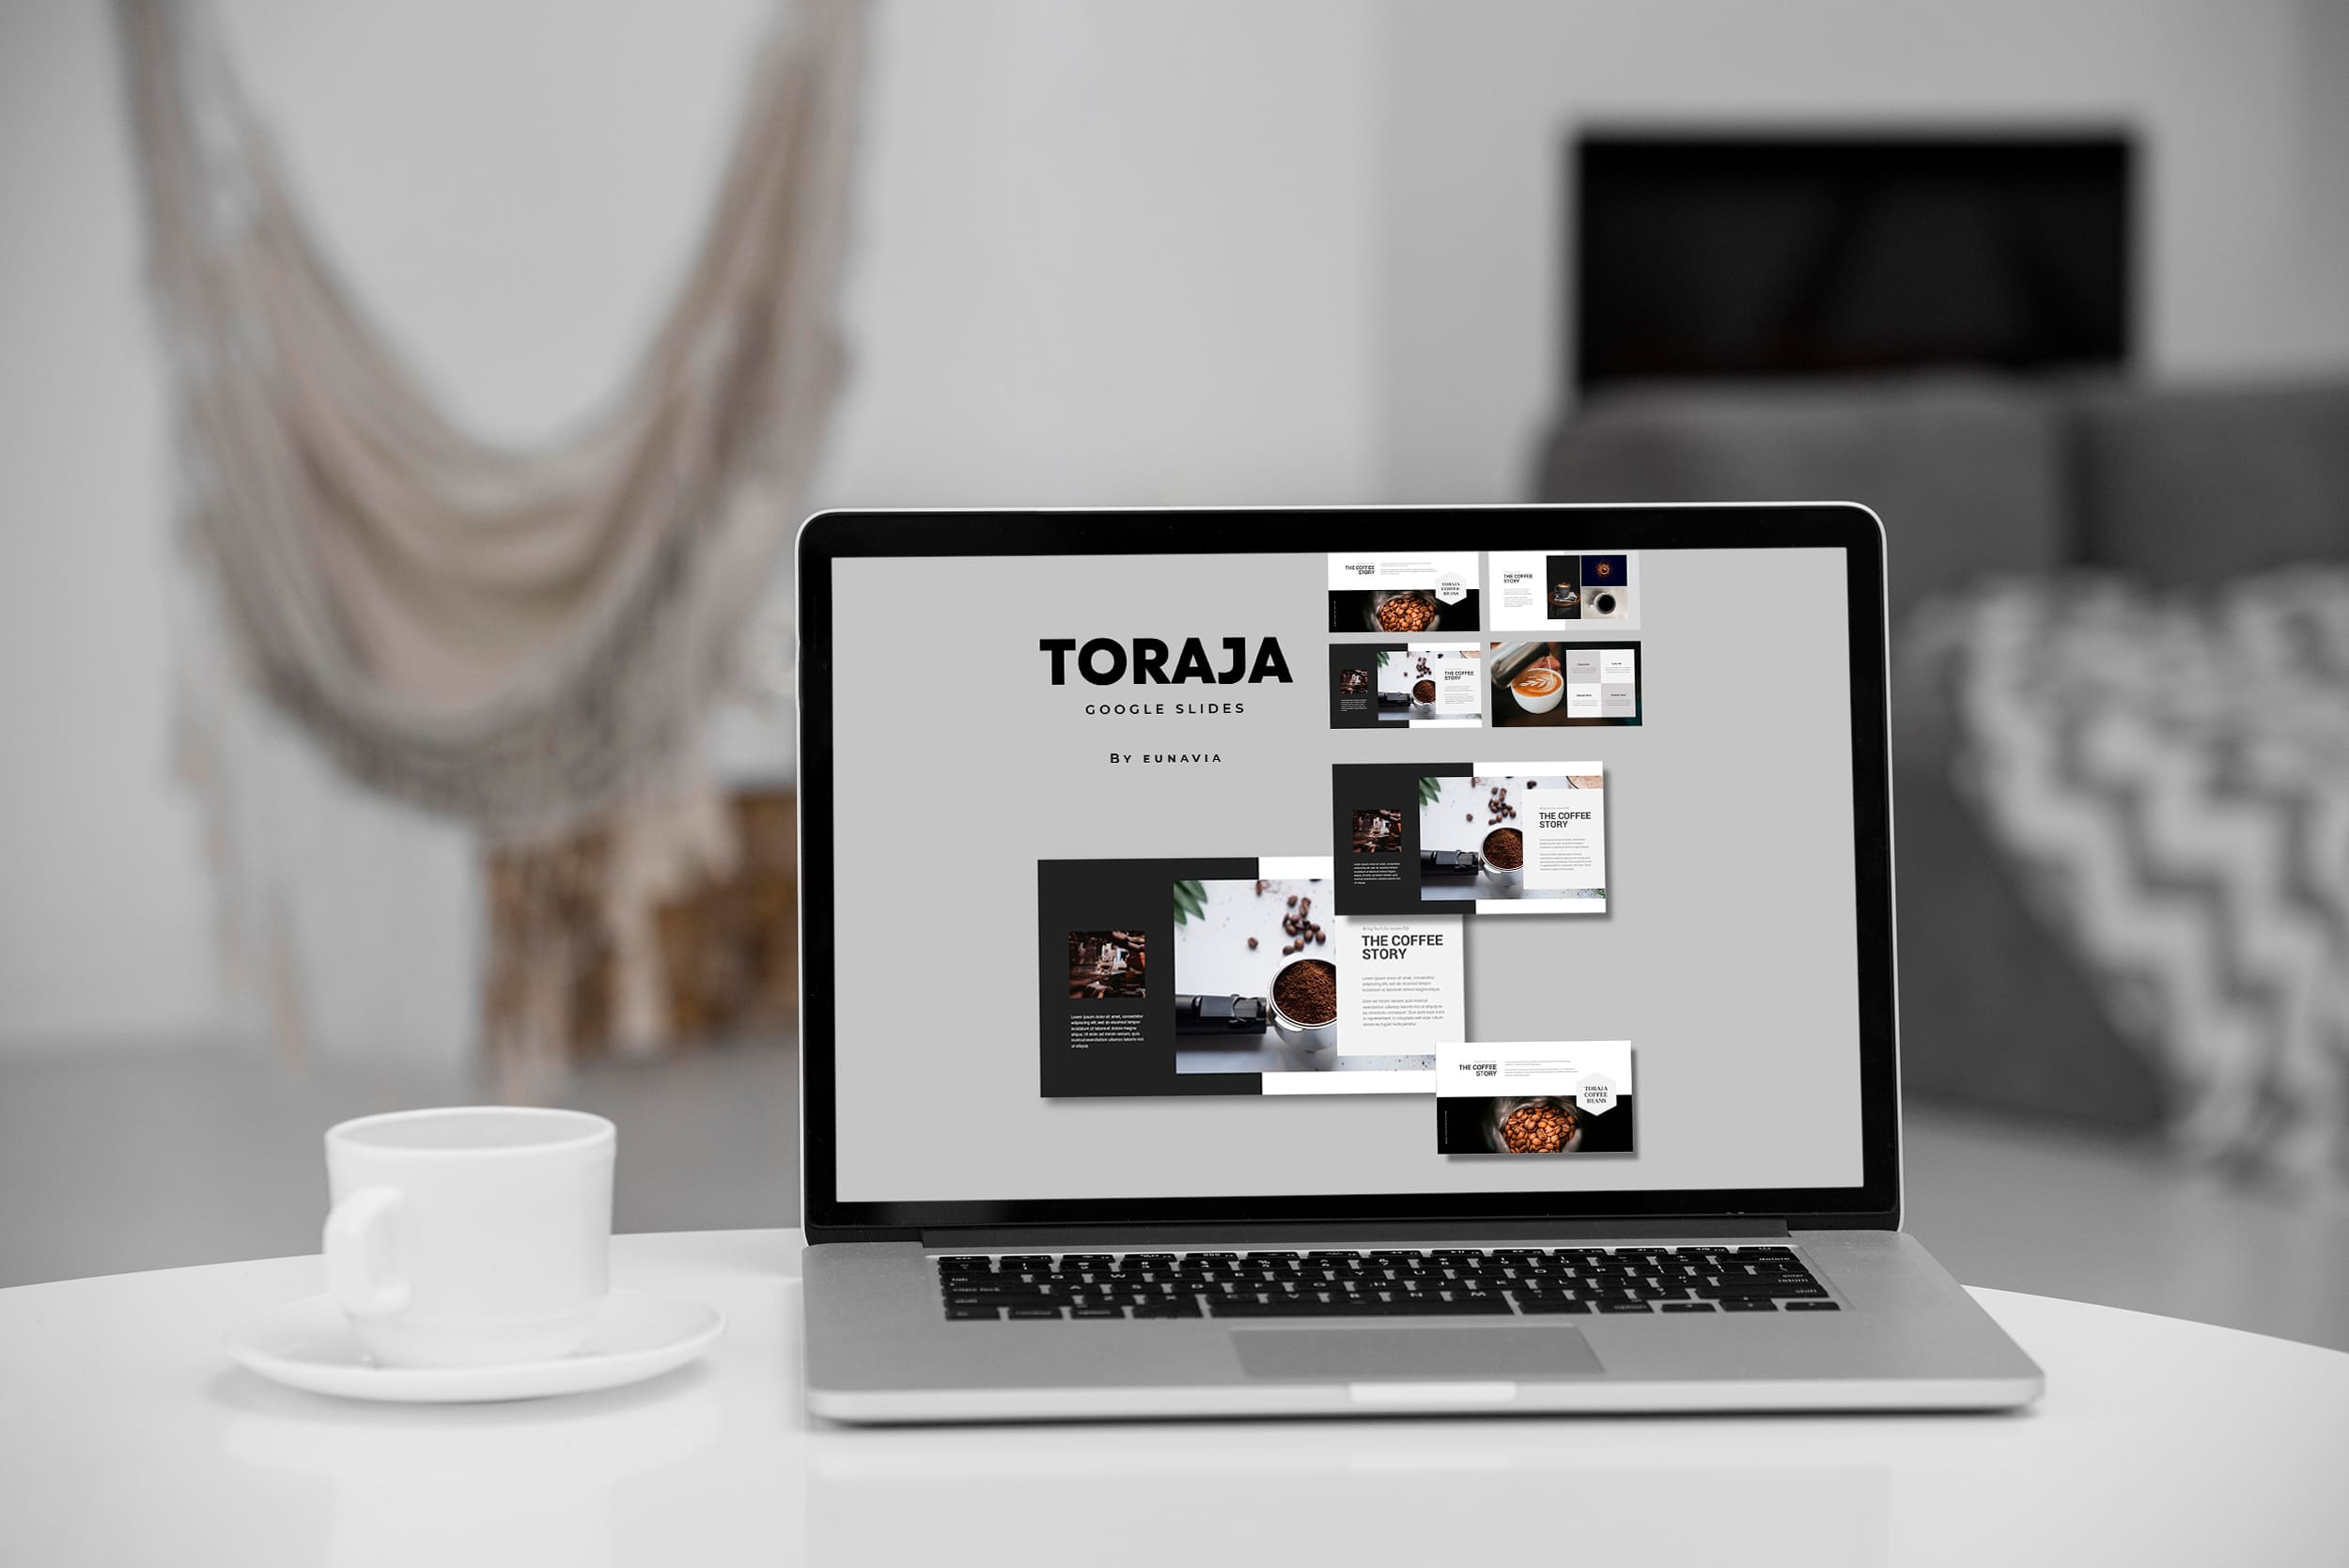 Toraja: Google Slides Template - Mockup on Laptop.